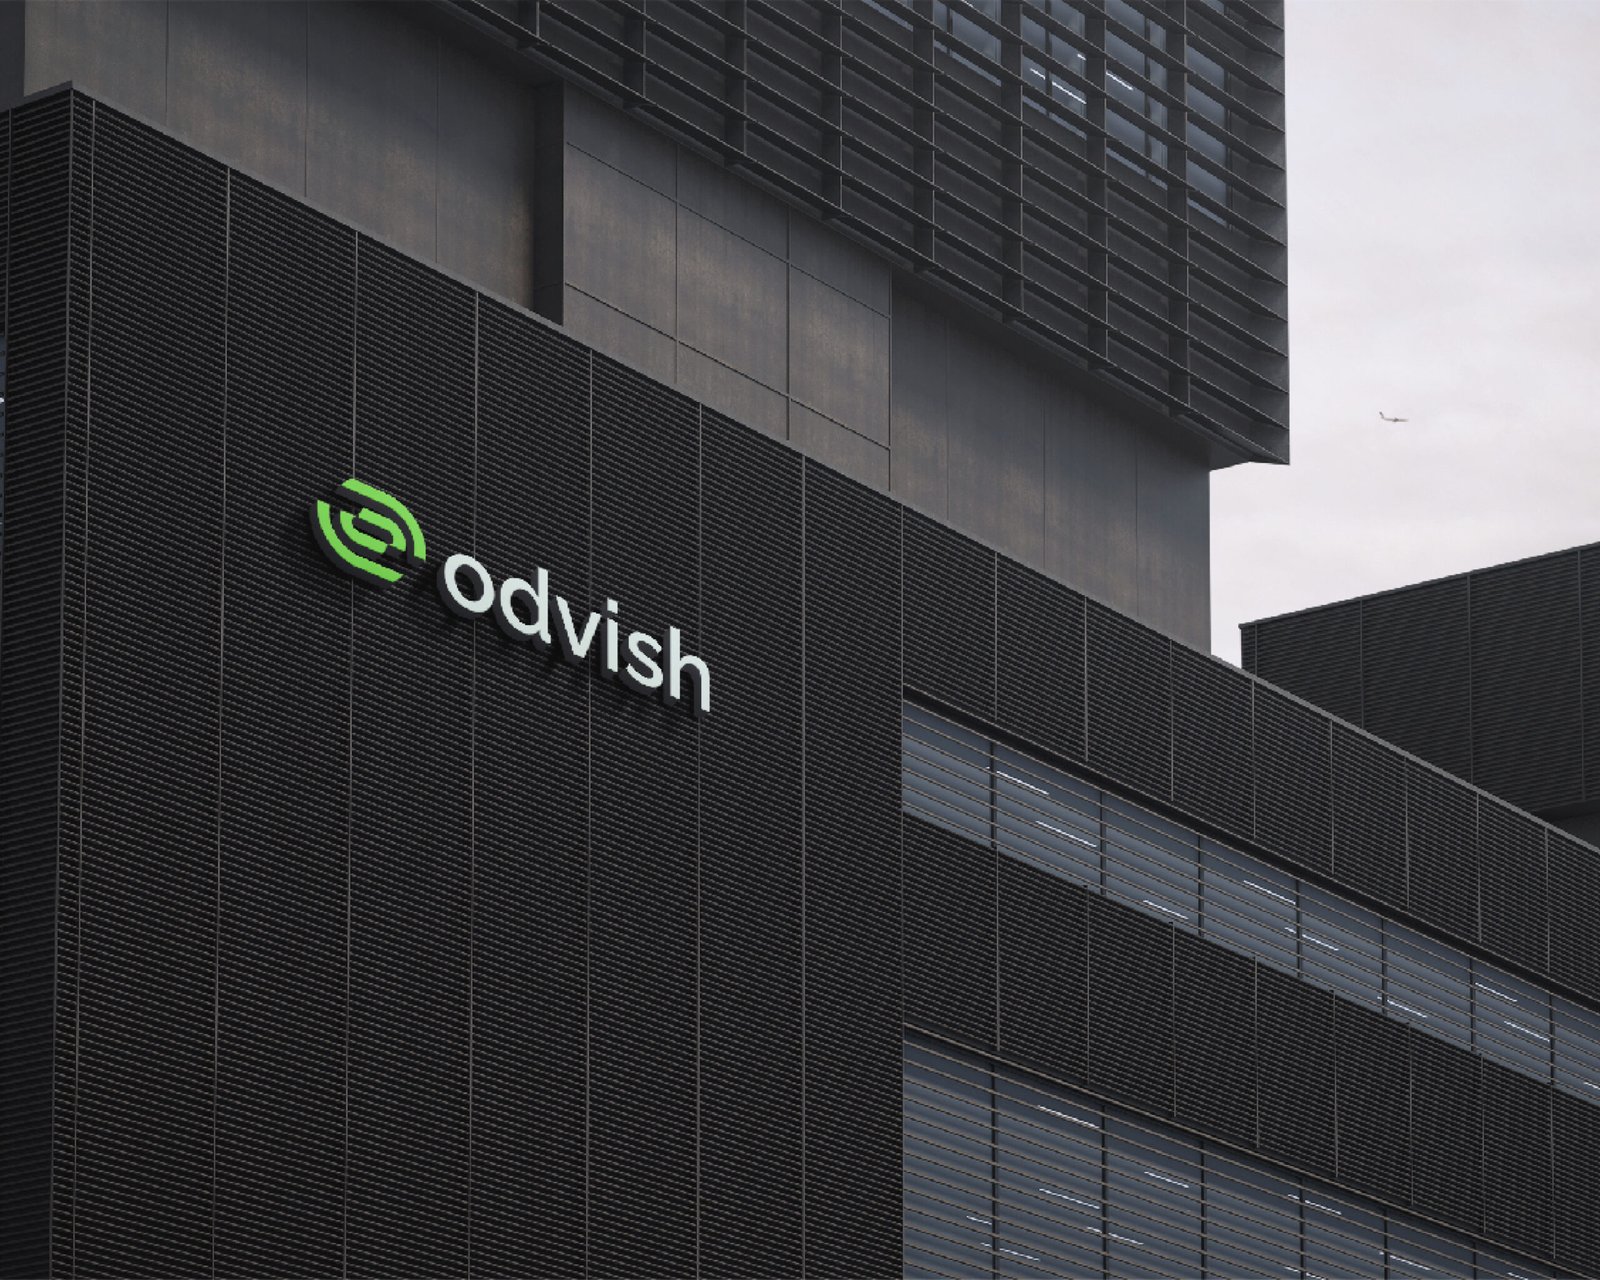 Odvish - Fintech Company Brand Identity